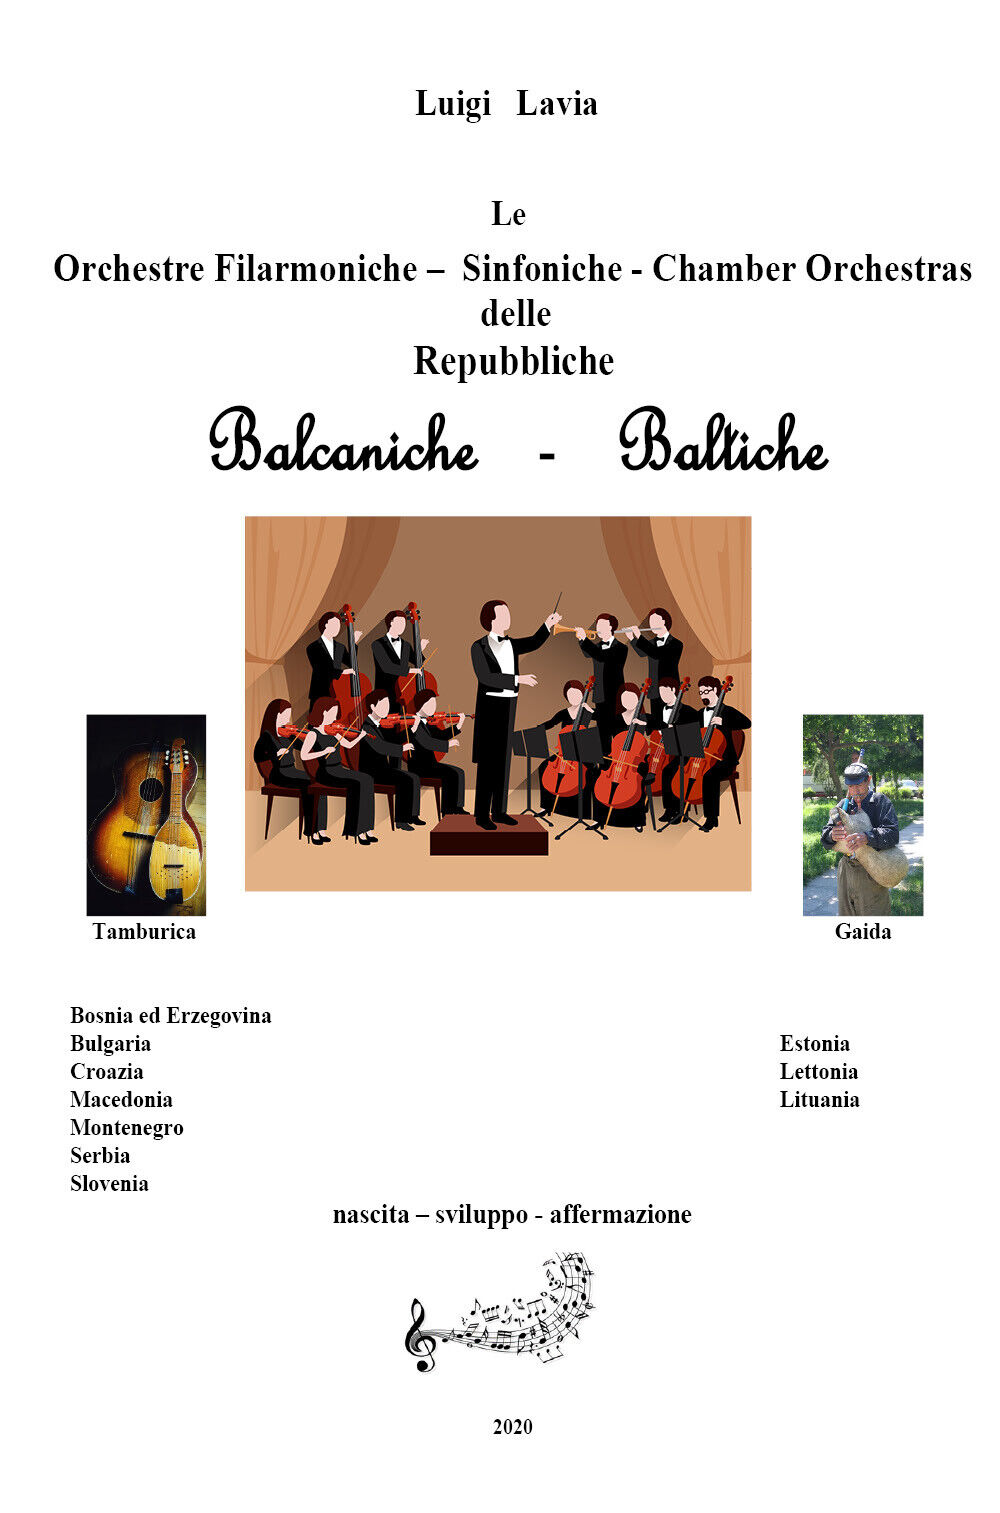 Le orchestre filarmoniche, sinfoniche e le chamber orchestras delle repubbliche  libro usato